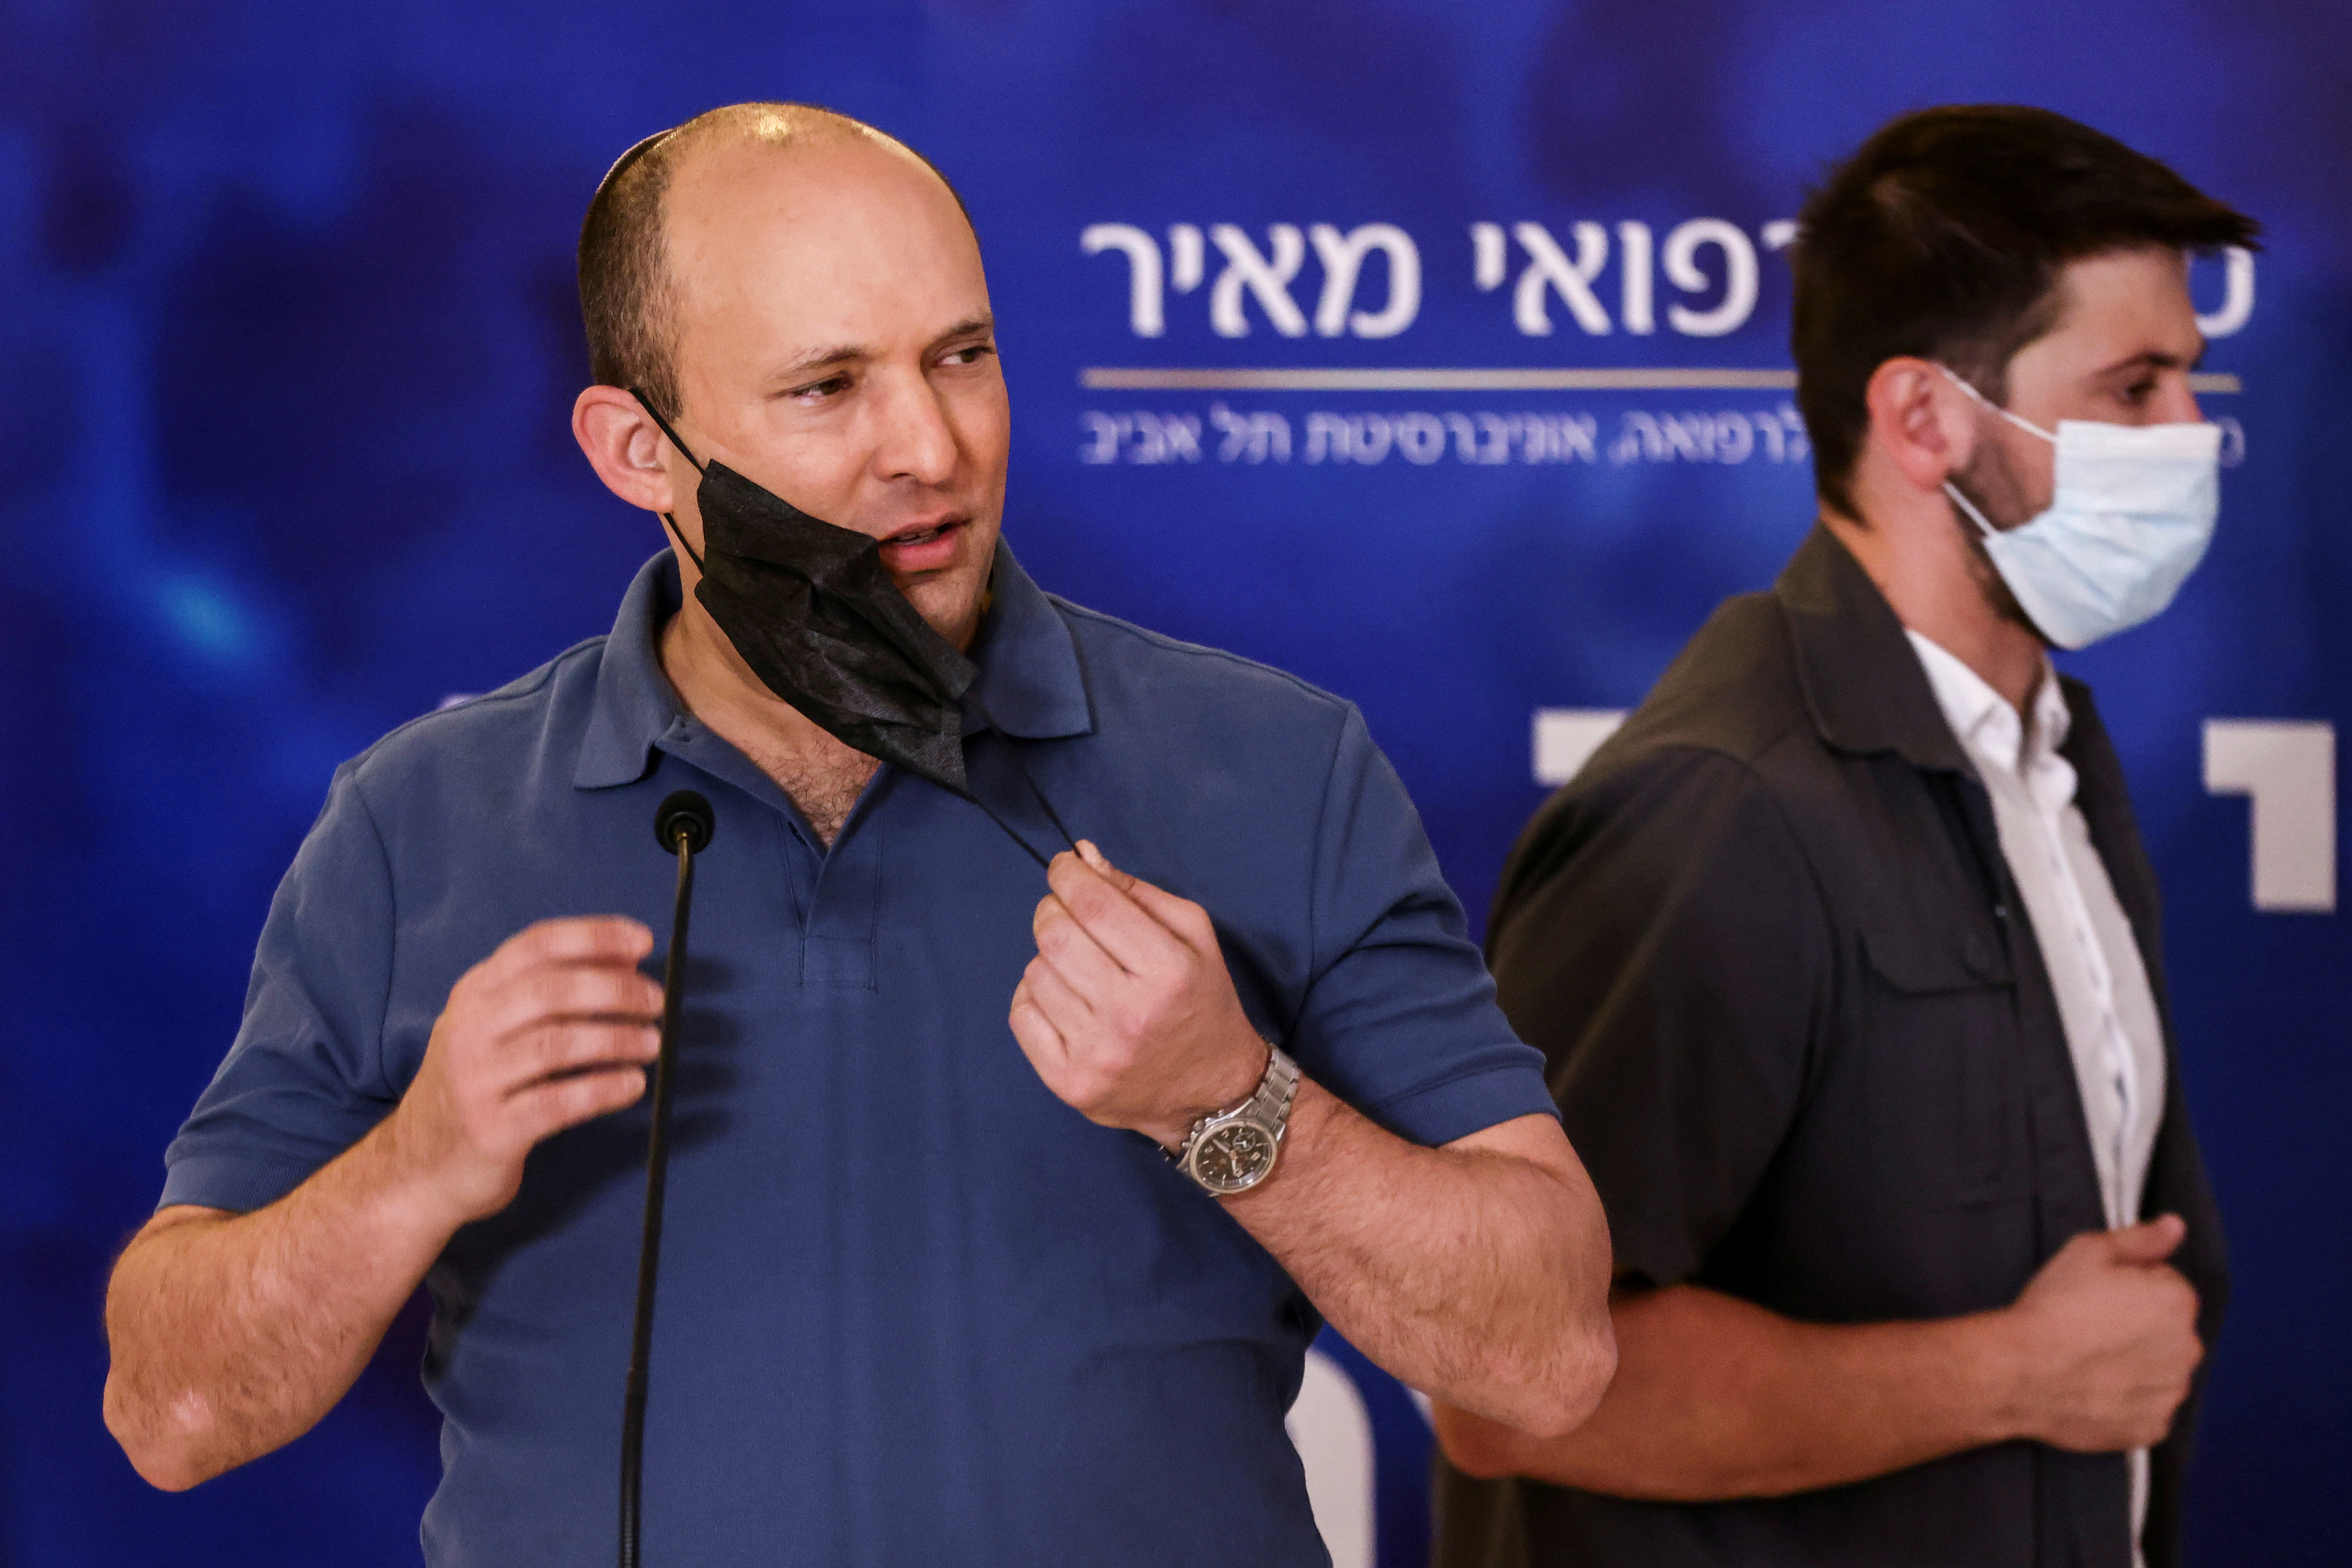 Перед законом усі рівні: ось і прем'єр-міністр Ізраїлю Нафталі Беннет приїхав за бустерною дозою. Фото: REUTERS/Ronen Zvulun/File Photo